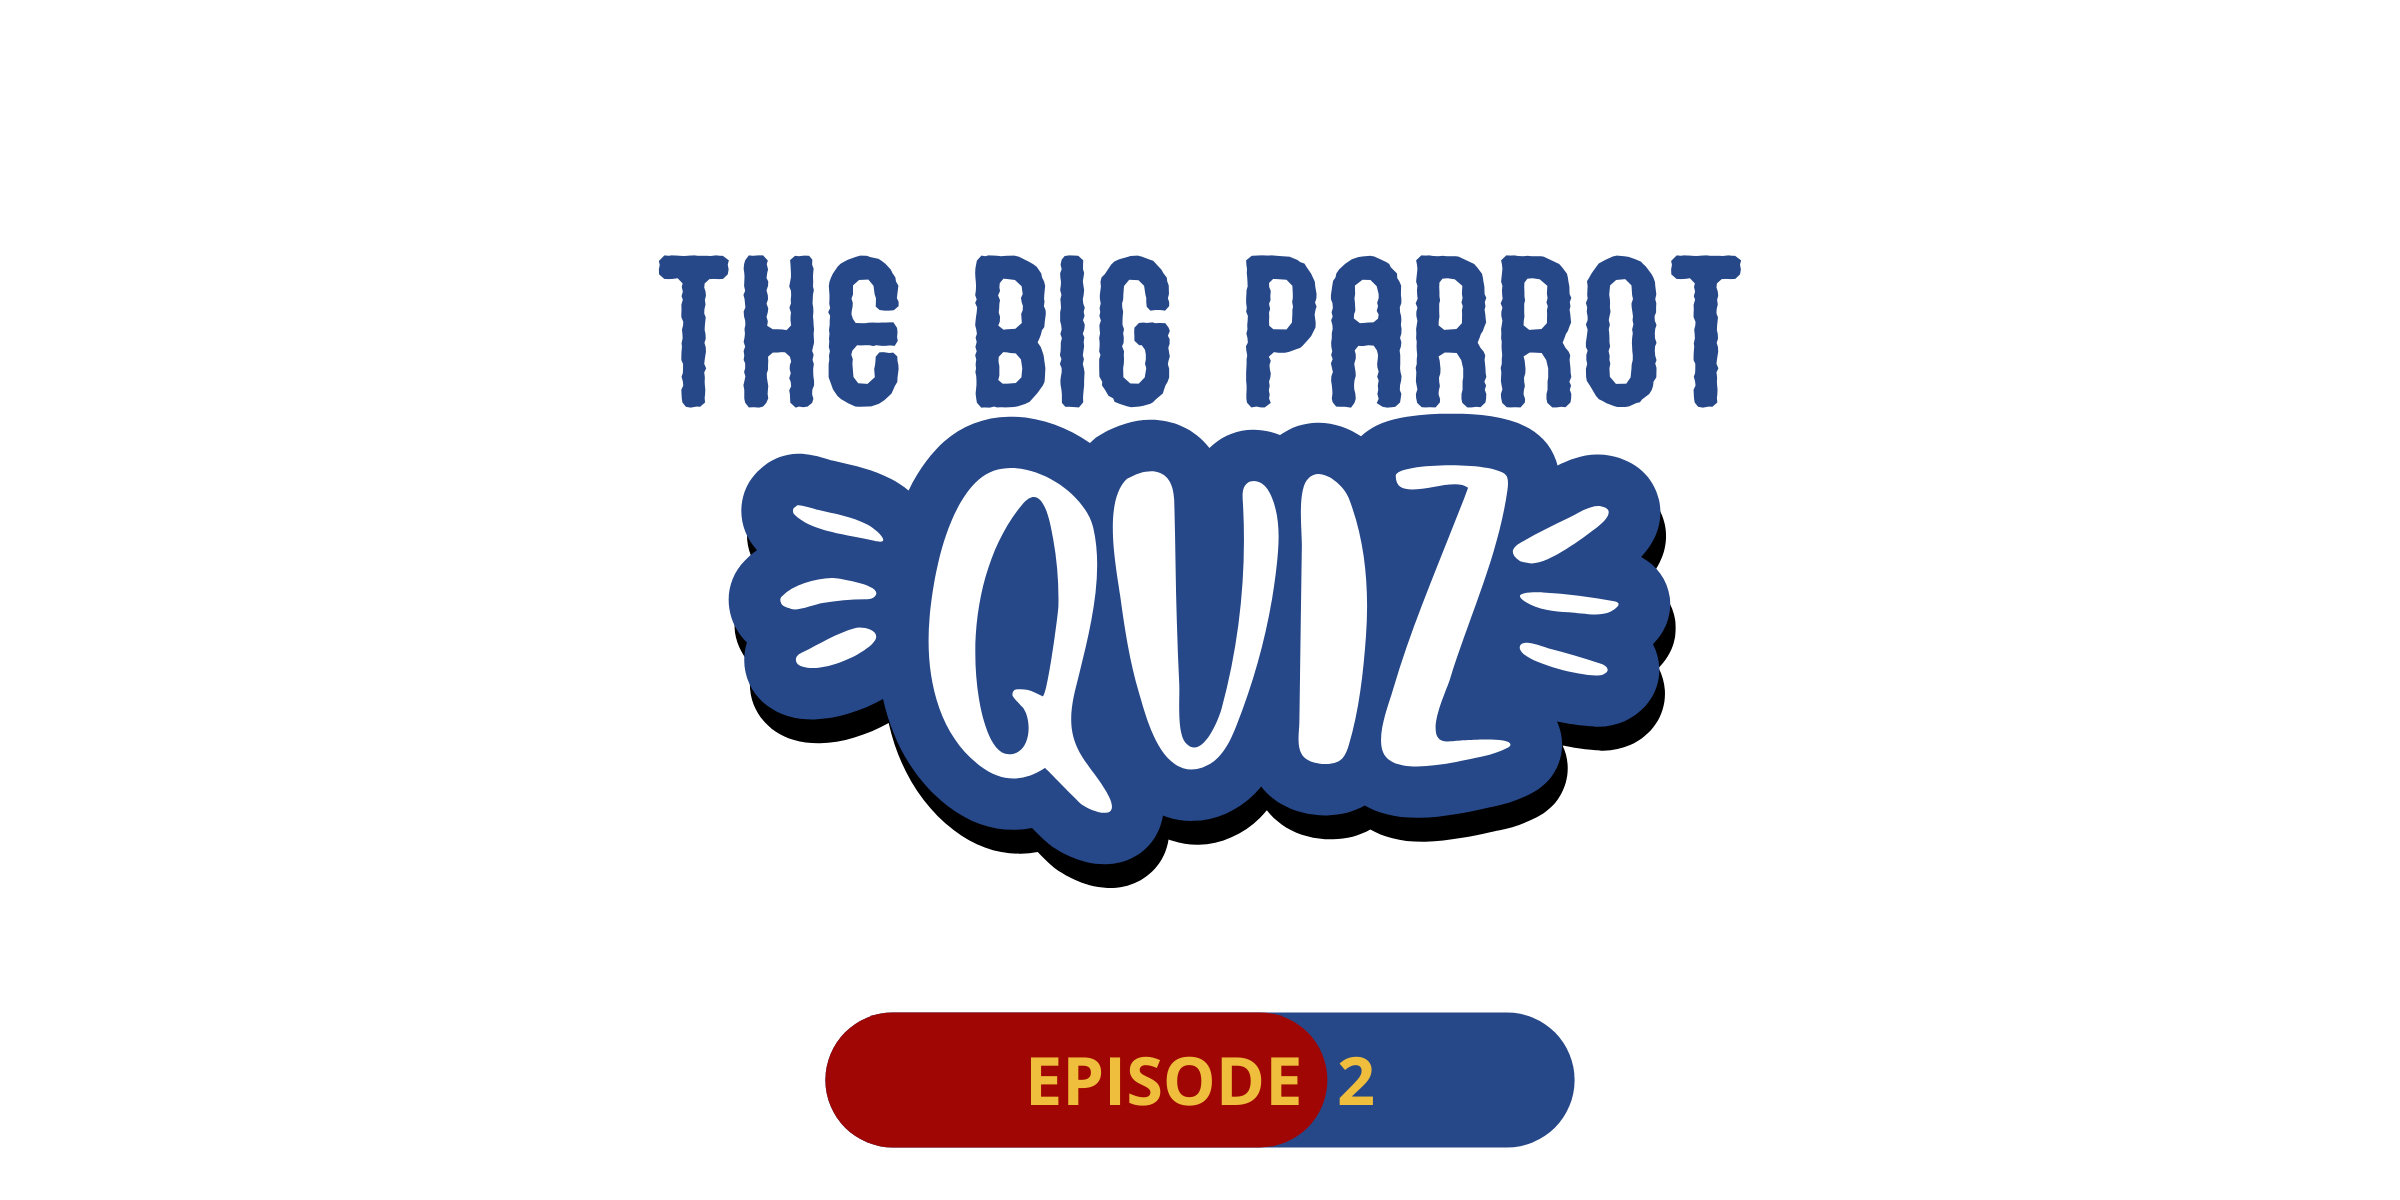 The big parrot quiz